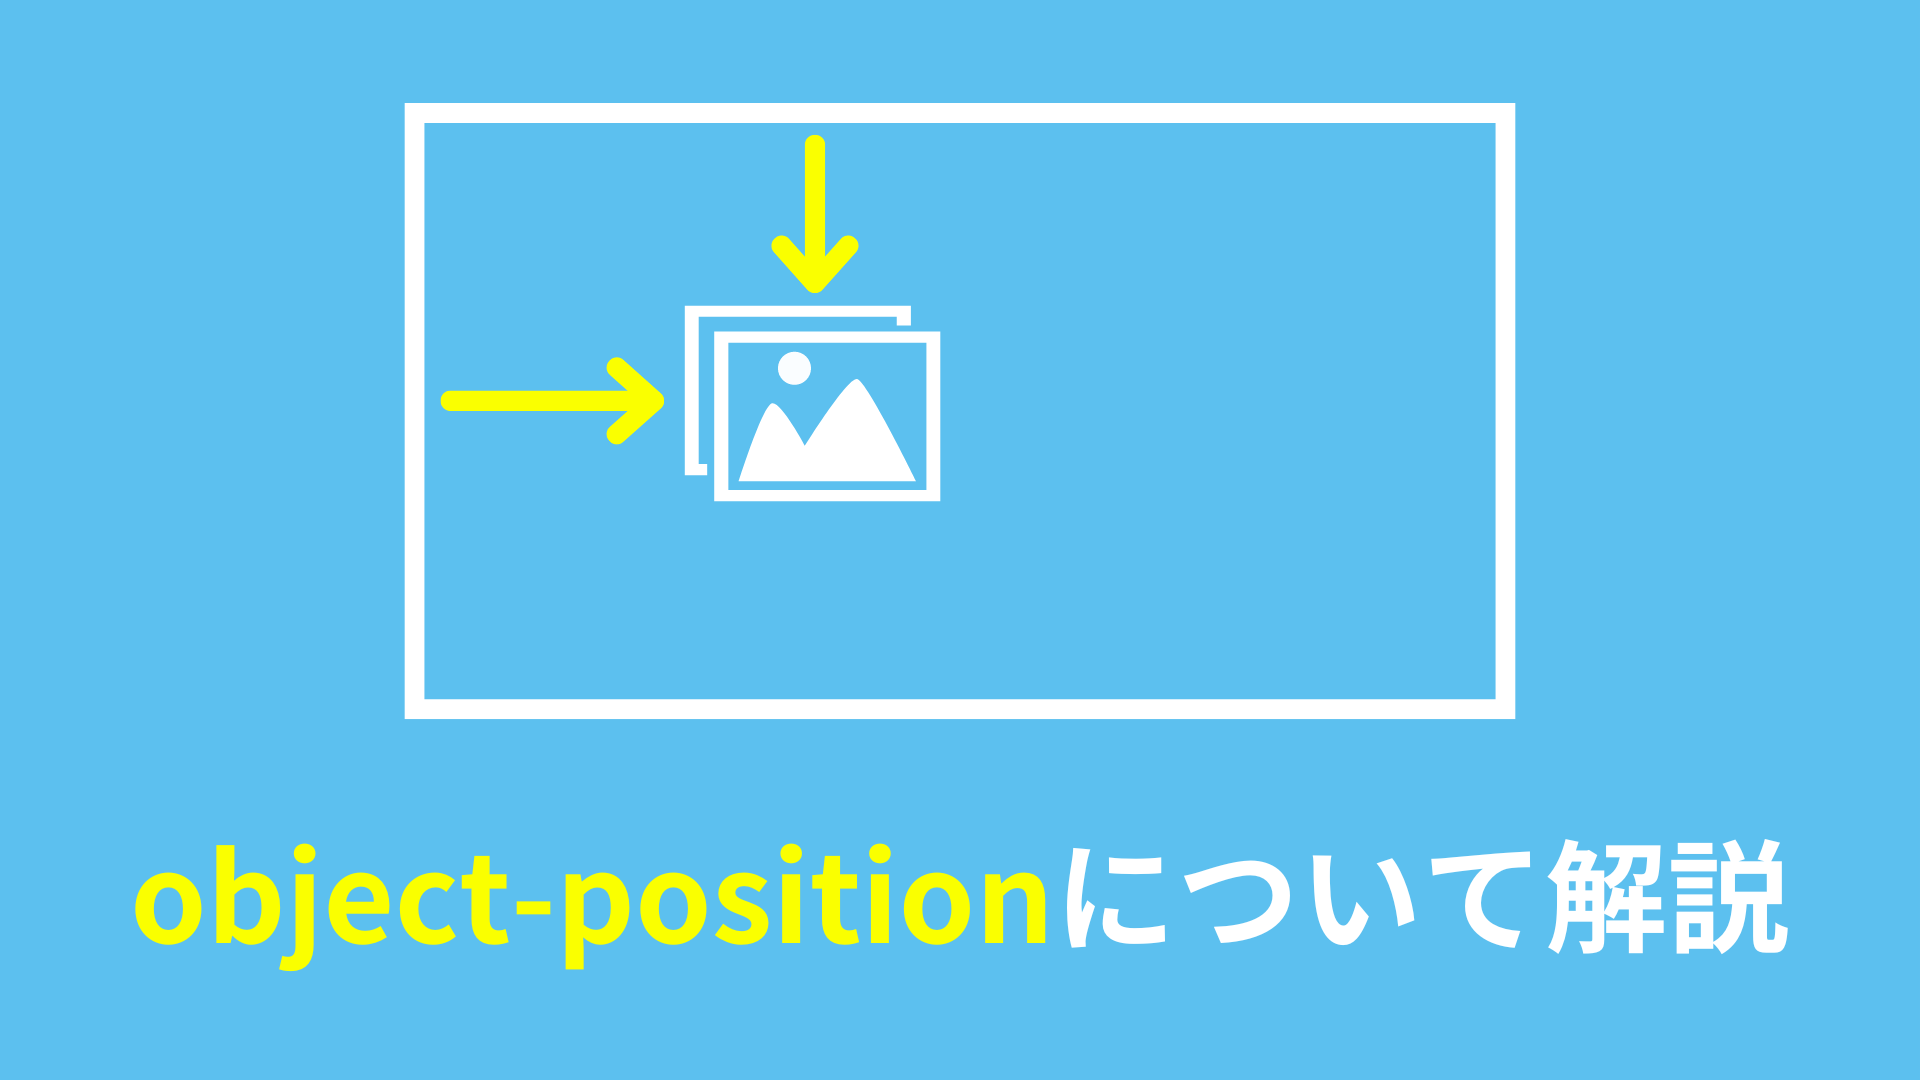 置換要素の表示位置を指定するobject-positionについて解説